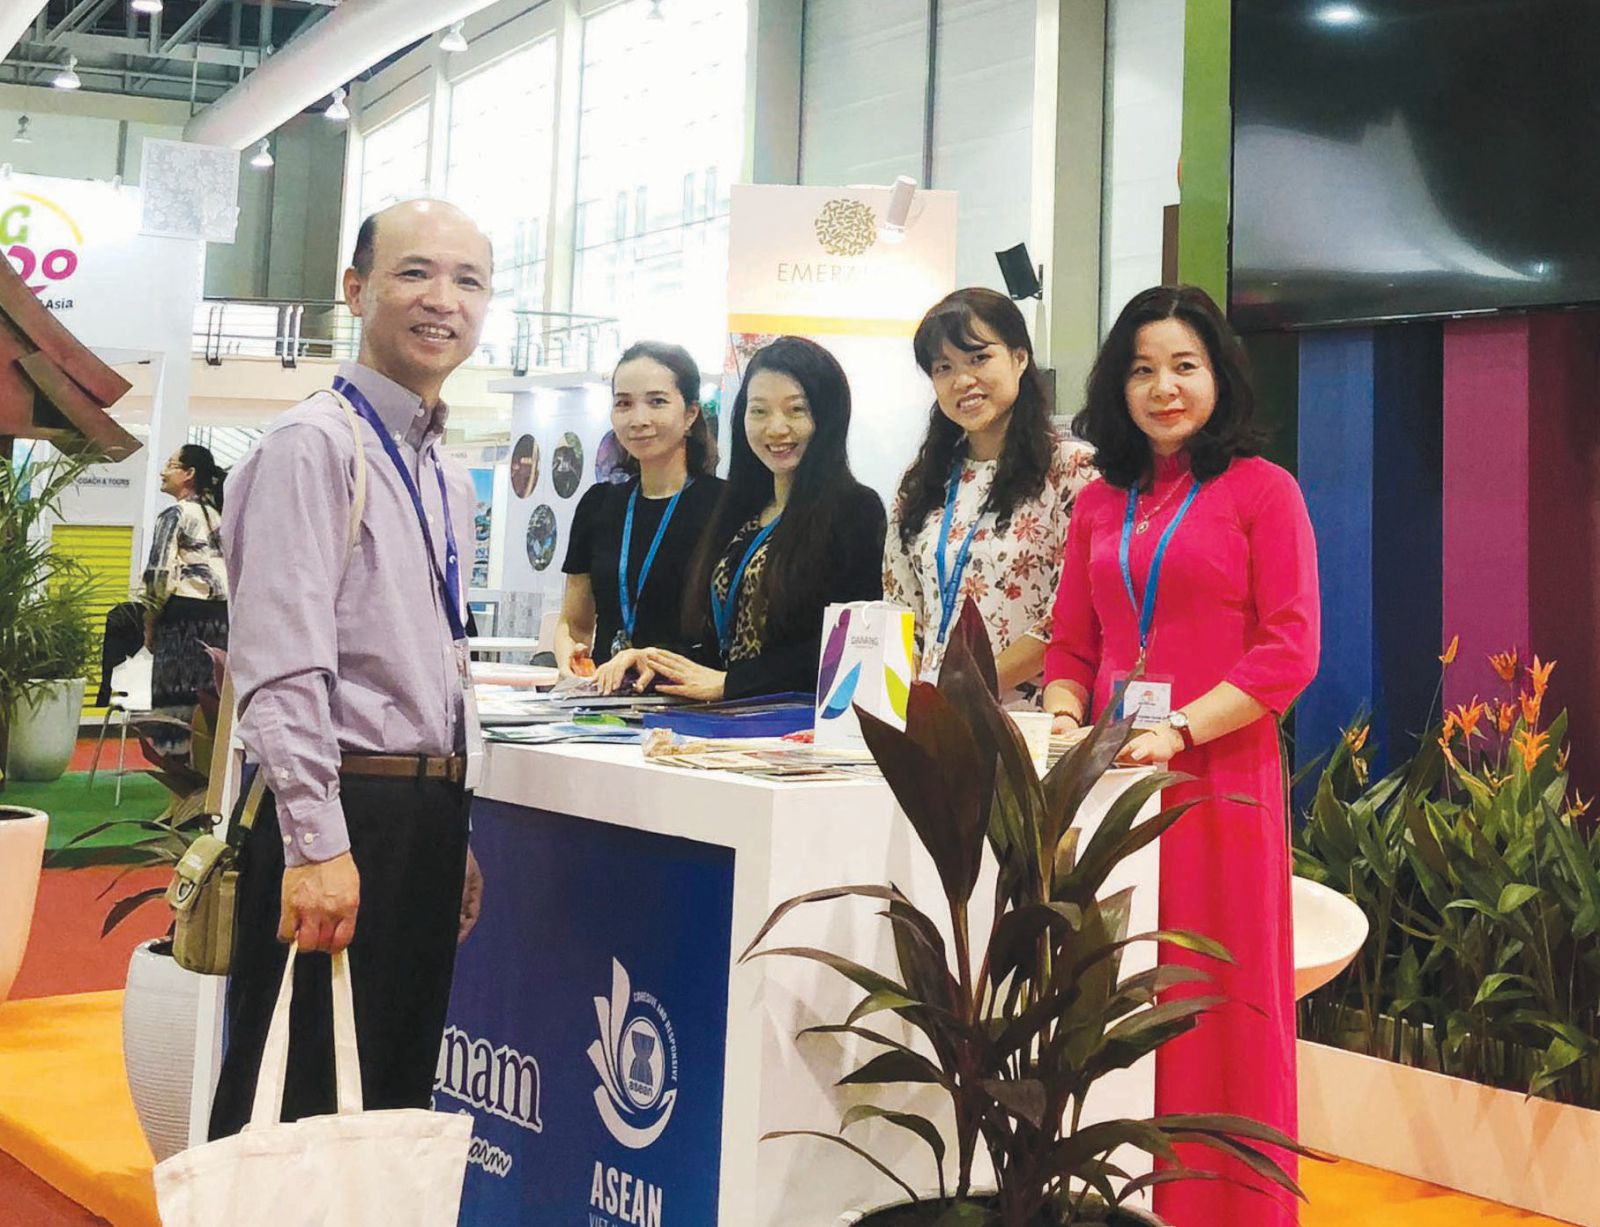 Hội chợ Du lịch TRAVEX 2020 (Brunei) thu hút các gian hàng đến từ 43 quốc gia và vùng lãnh thổ gặp gỡ trao đổi nhằm tăng cường thu hút khách đến các nước thành viên ASEAN